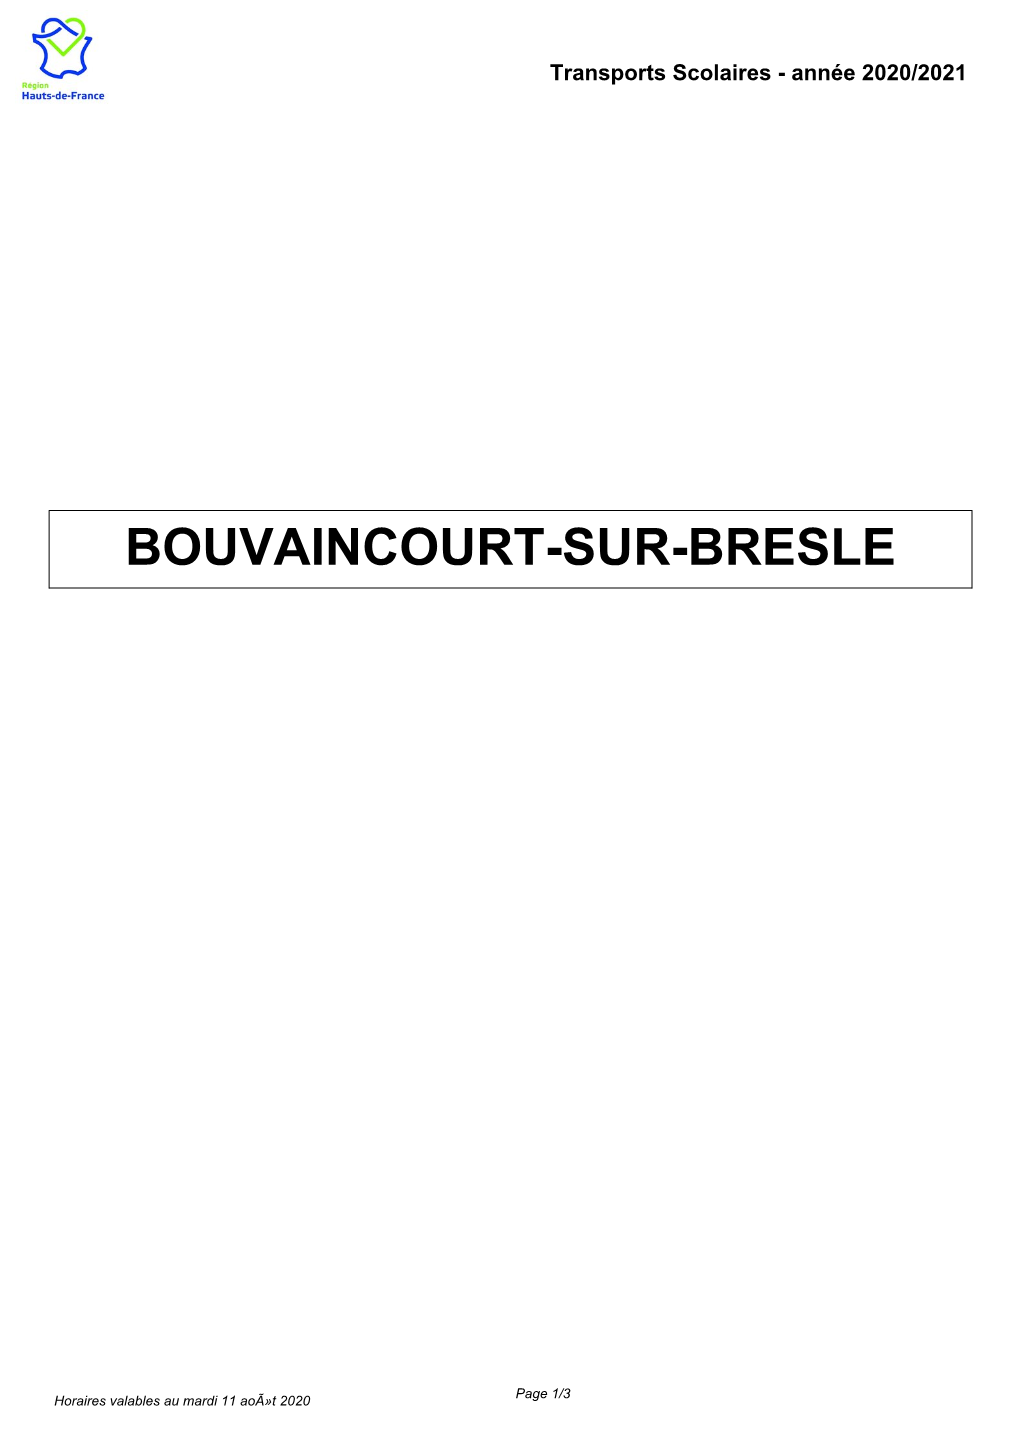 Bouvaincourt-Sur-Bresle